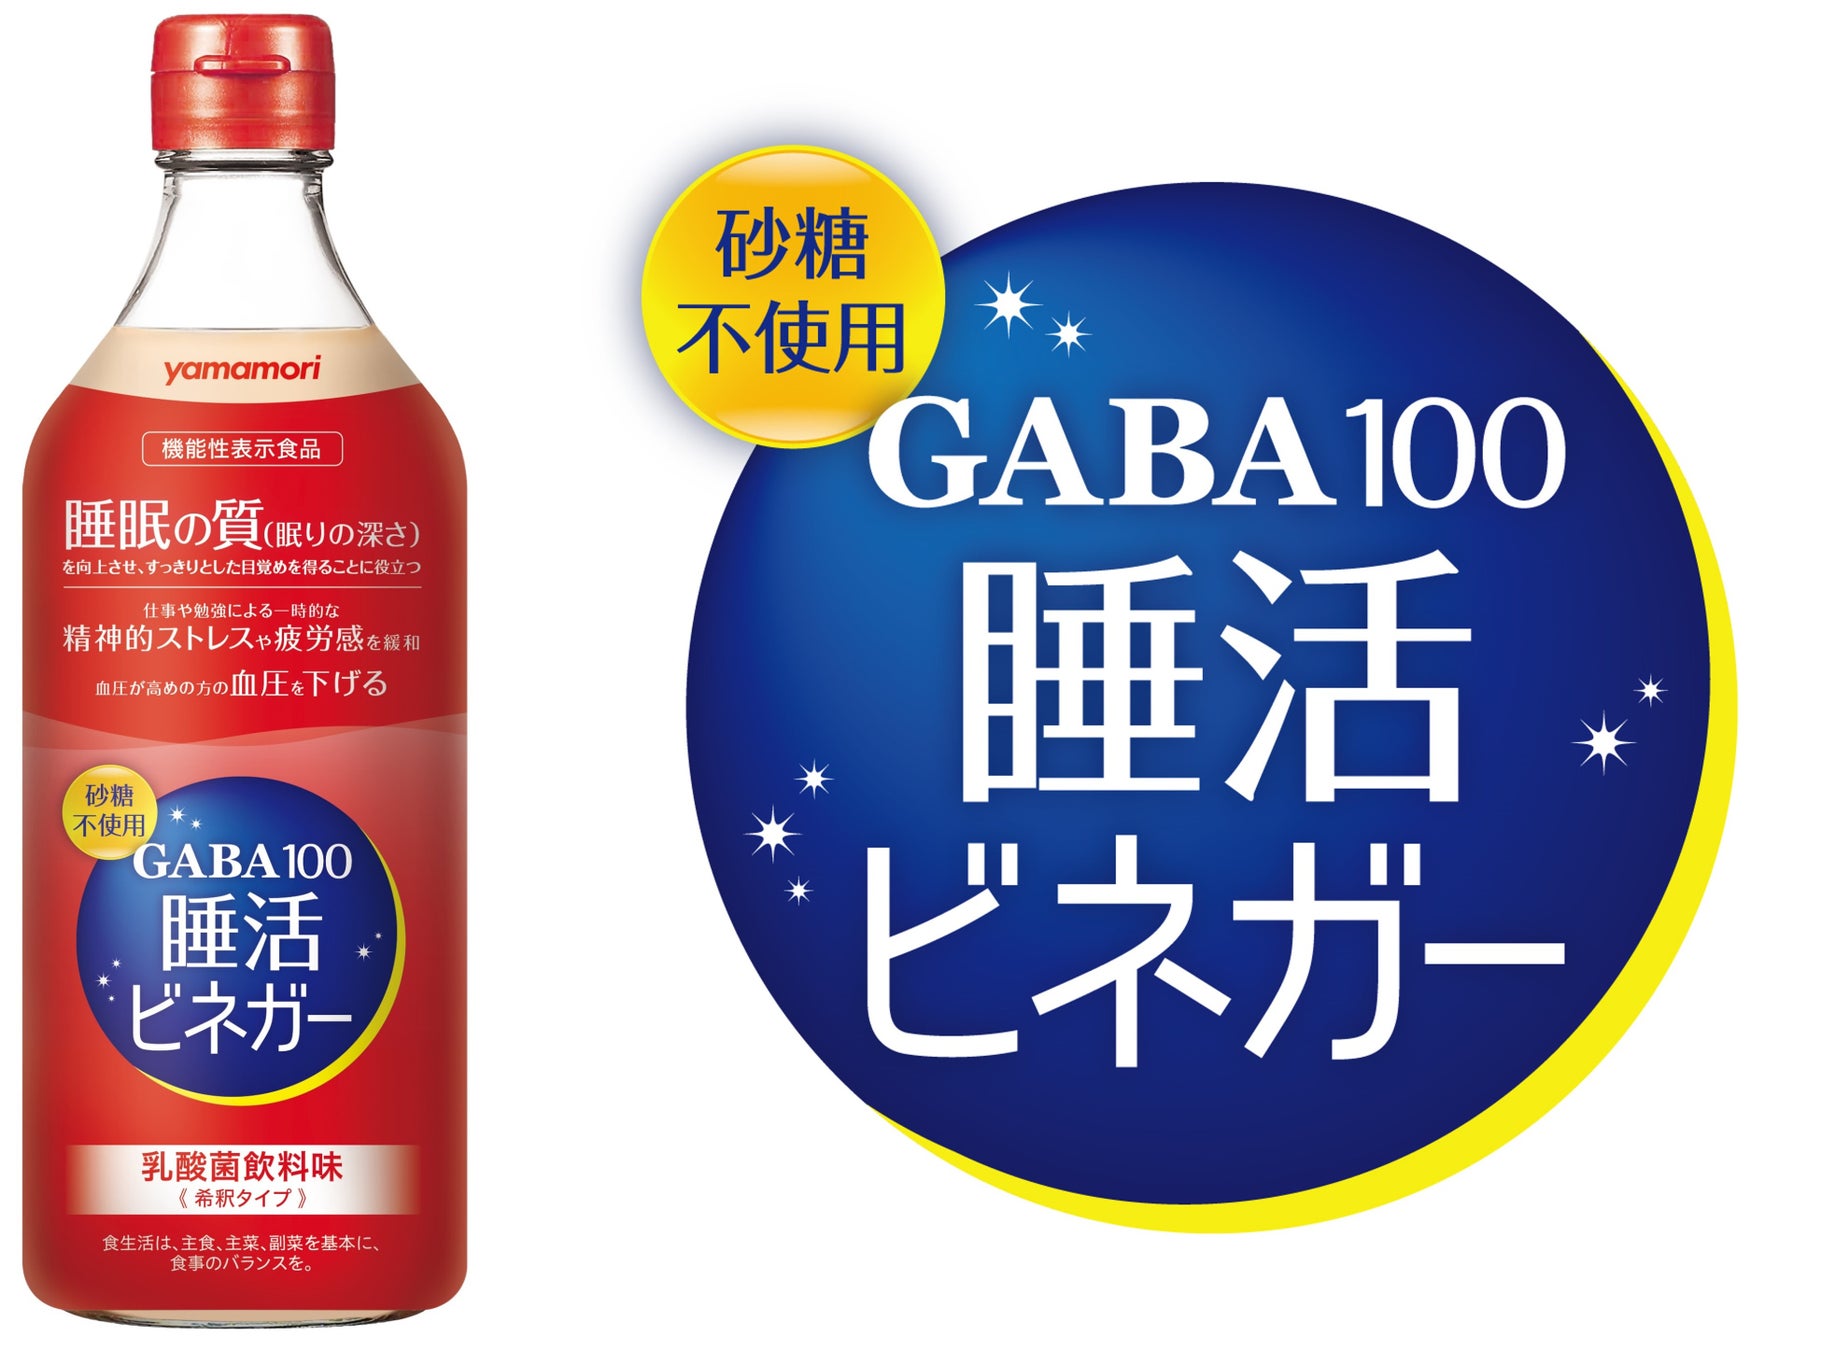 自然生まれのGABAが睡眠の質を向上。他にもうれしい機能が満載の ヤマモリ 機能性表示食品「GABA100睡活ビネガー」新発売